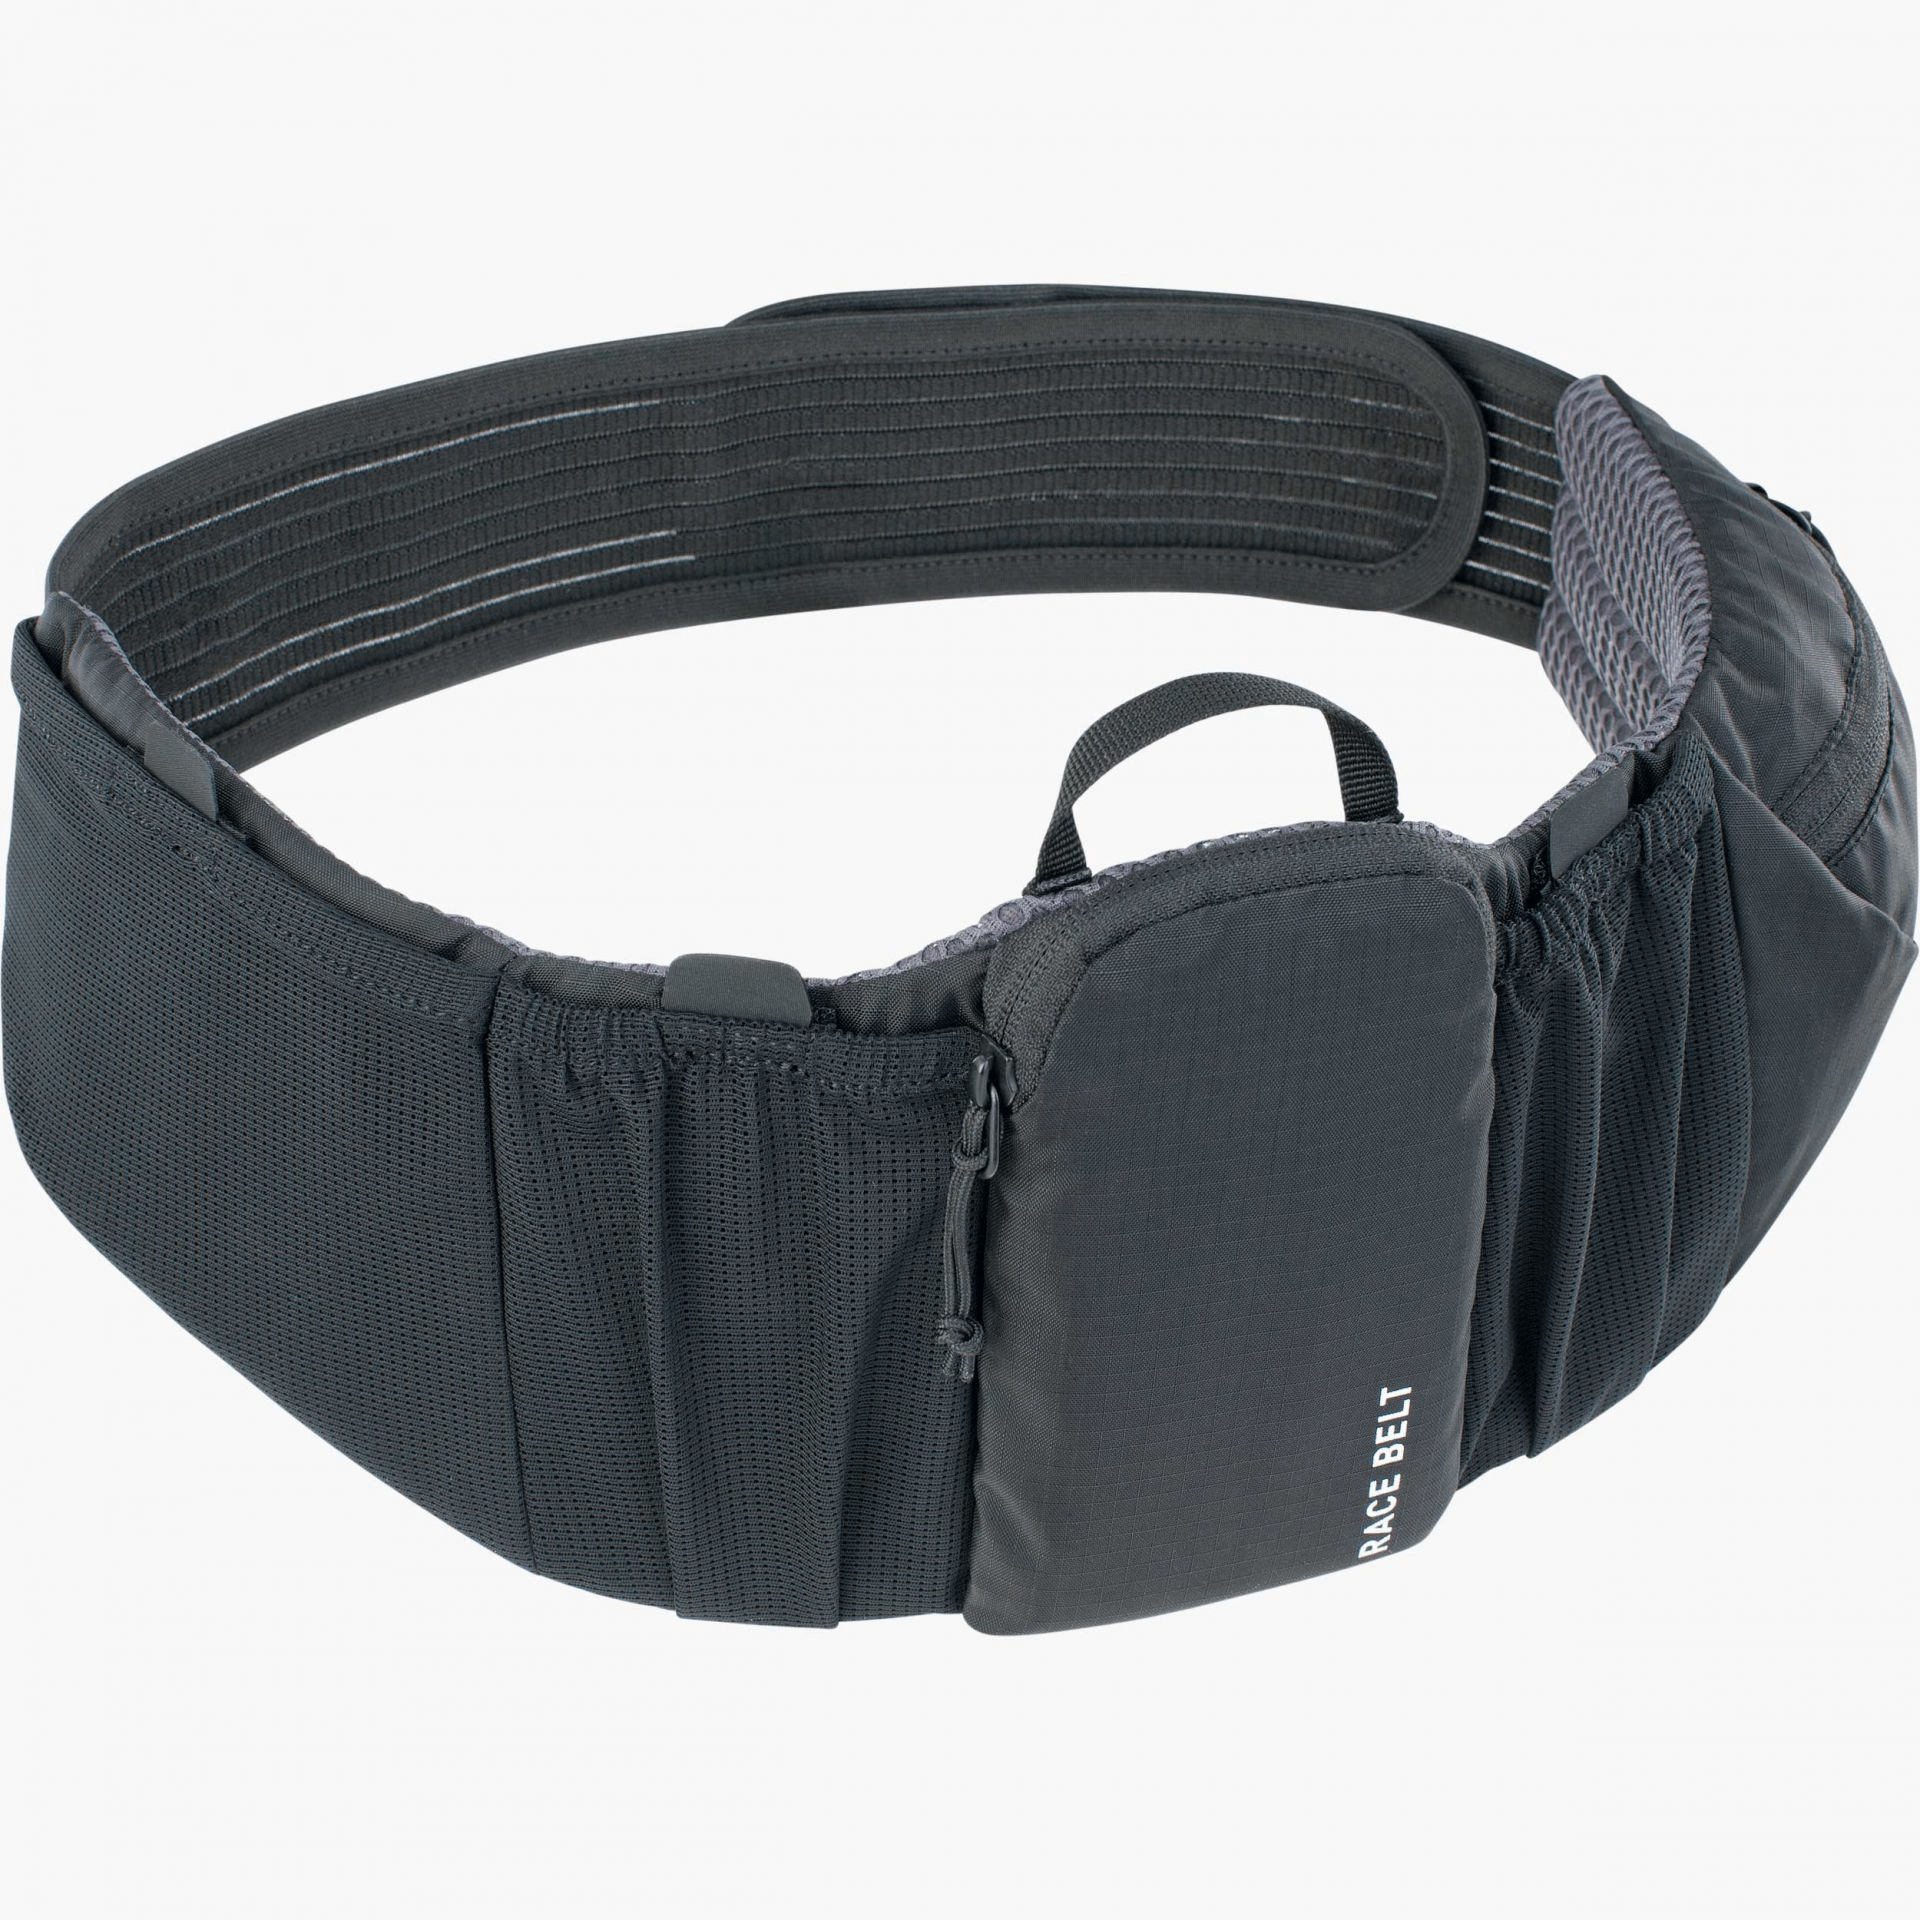 EVOC Race Belt 0.8L, Black Accessories - Bags - Hip Bags